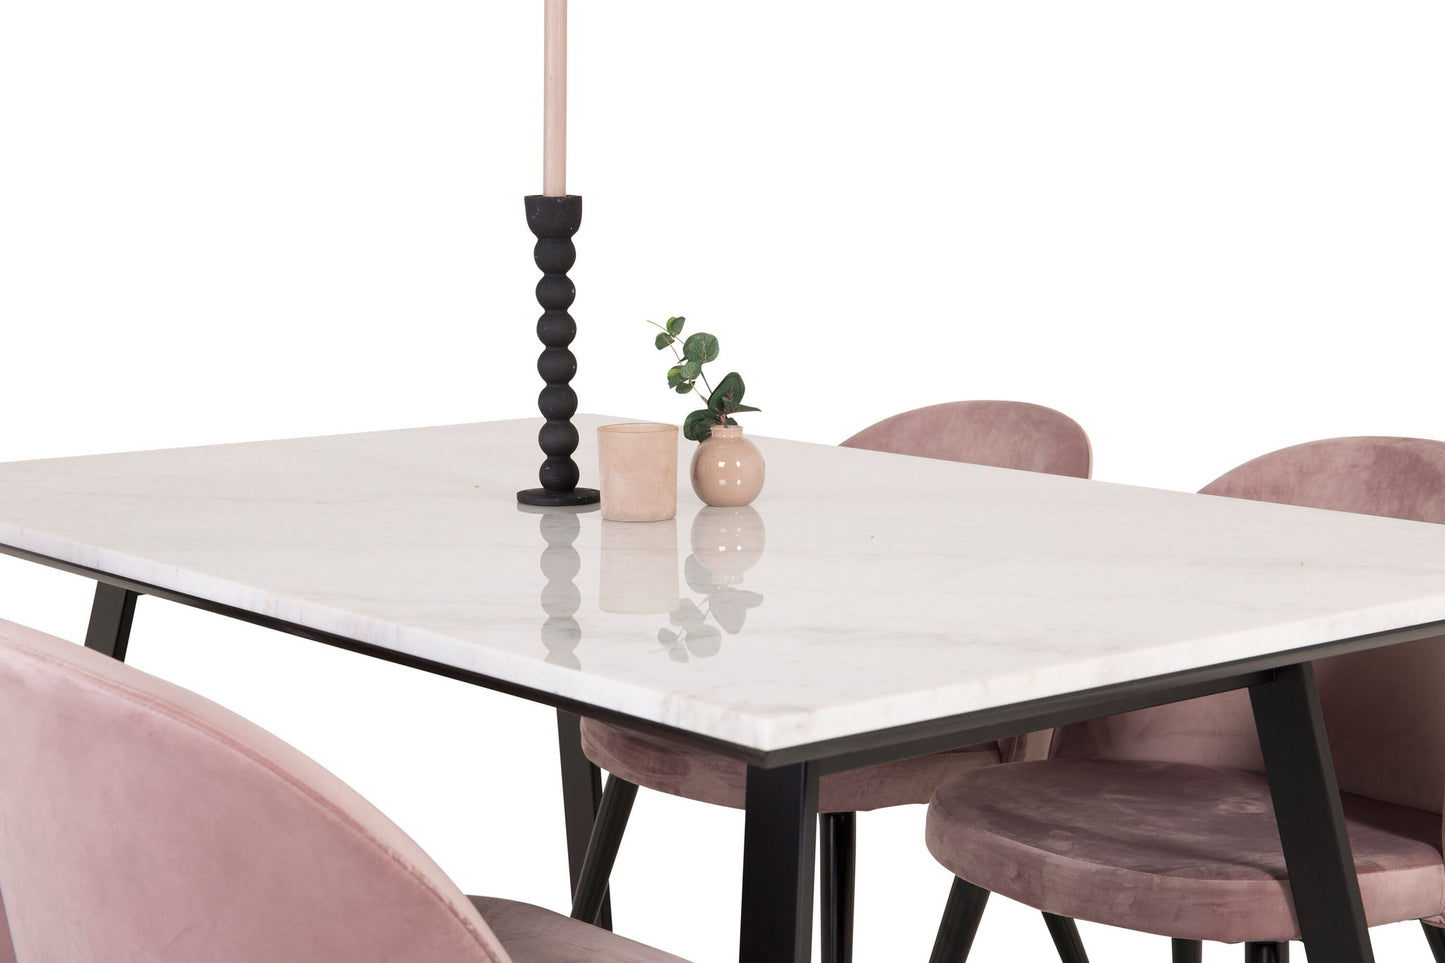 Estelle - Spisebord, 140*90 - Hvid Marmor / Sorte ben - velour Spisebordsstol - Pink / Sort 4